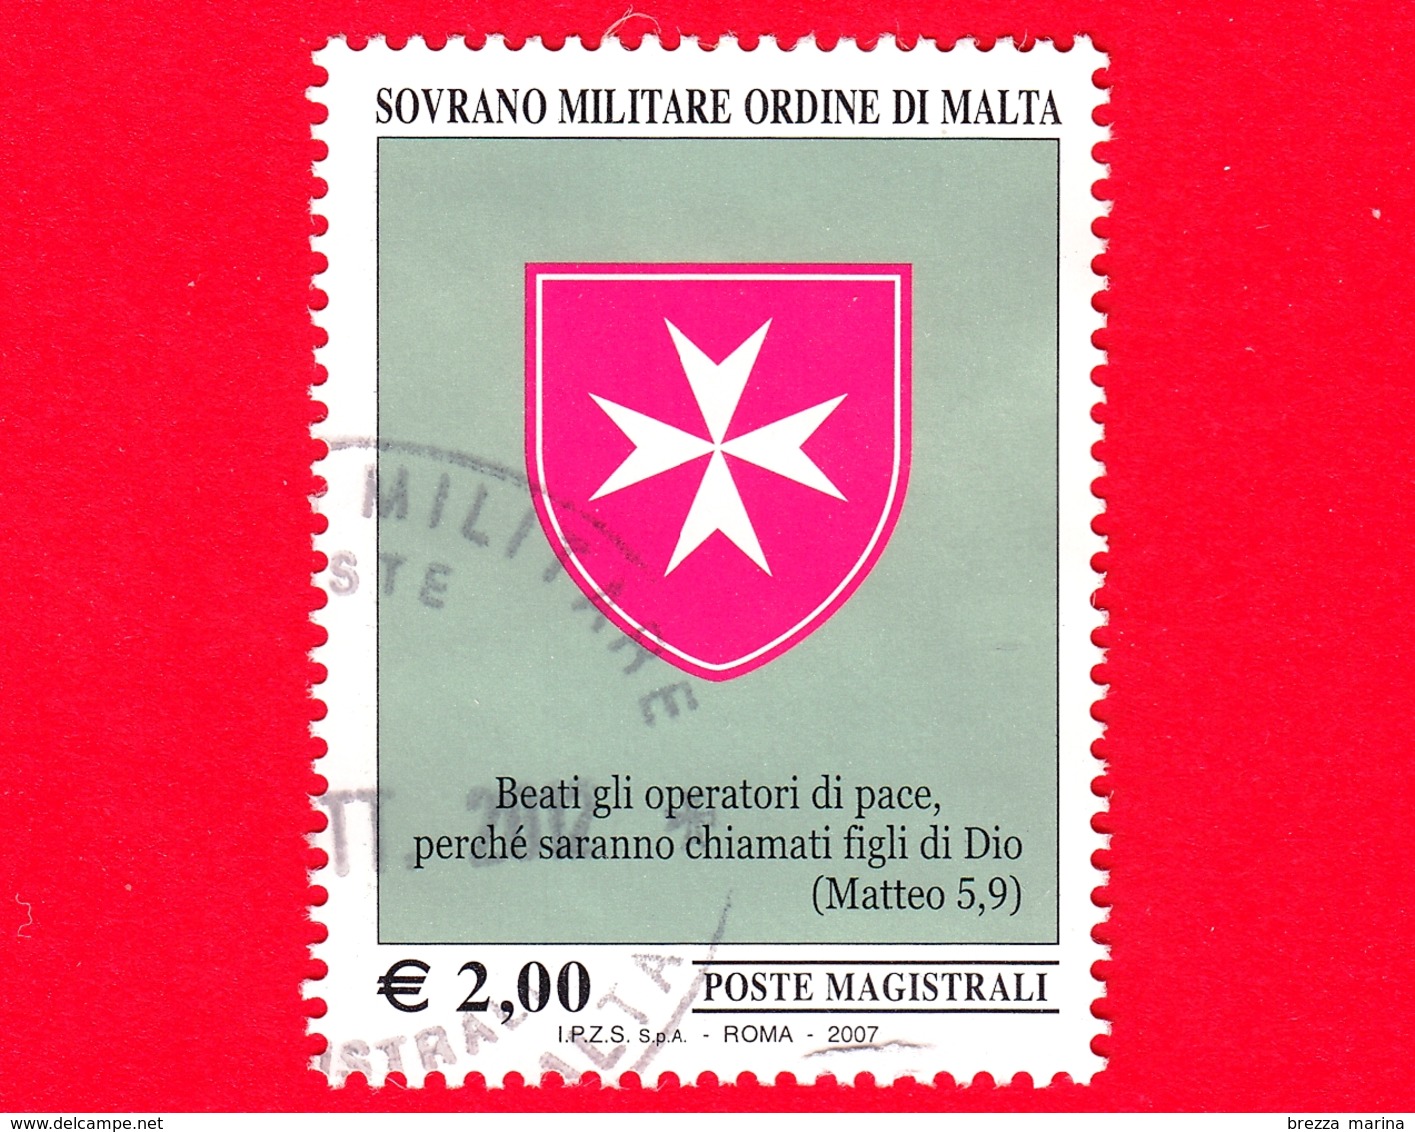 SMOM - Sovrano Militare Ordine Di Malta - Usato - 2007 - Croce Ottagona E Le Beatitudini -  2 € - Sovrano Militare Ordine Di Malta